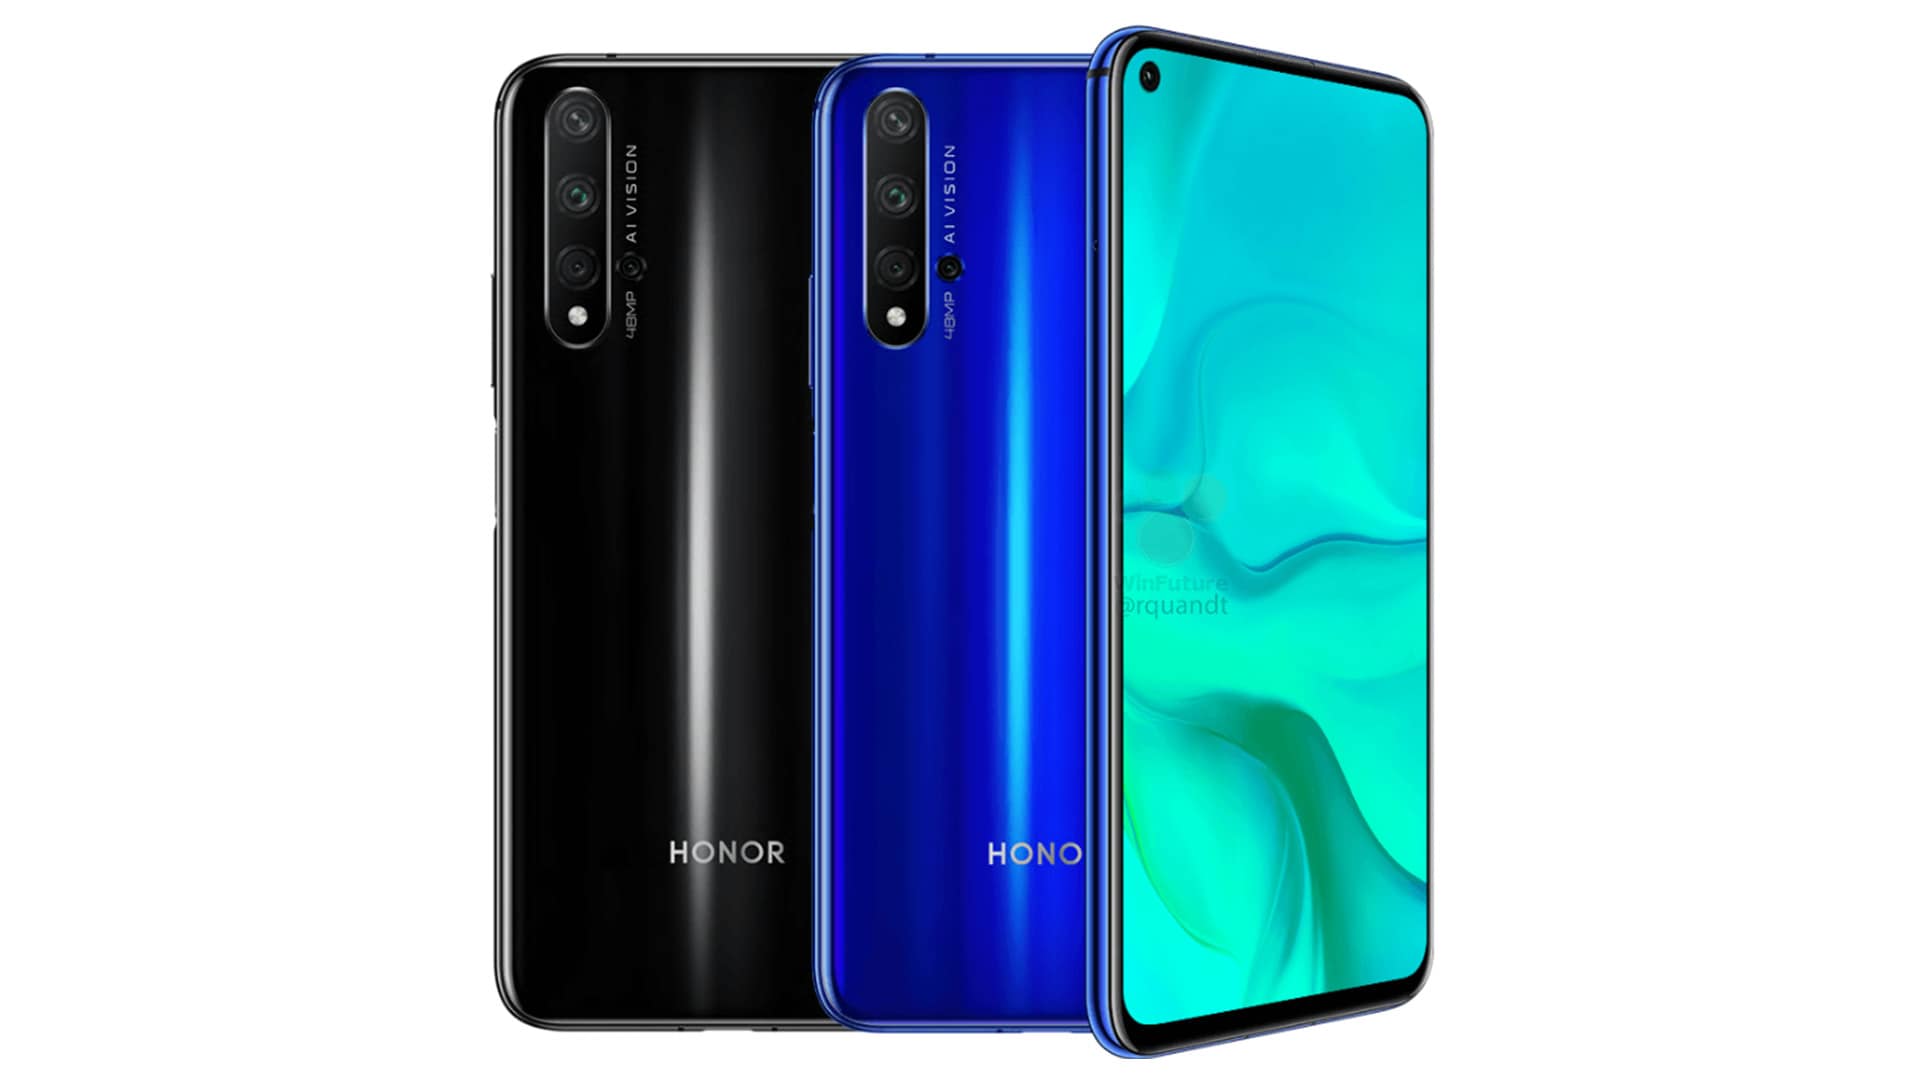 Honor 20 praticamente ufficiale: prezzo inferiore a Huawei P30, Kirin 980, quad camera e foro frontale (foto)